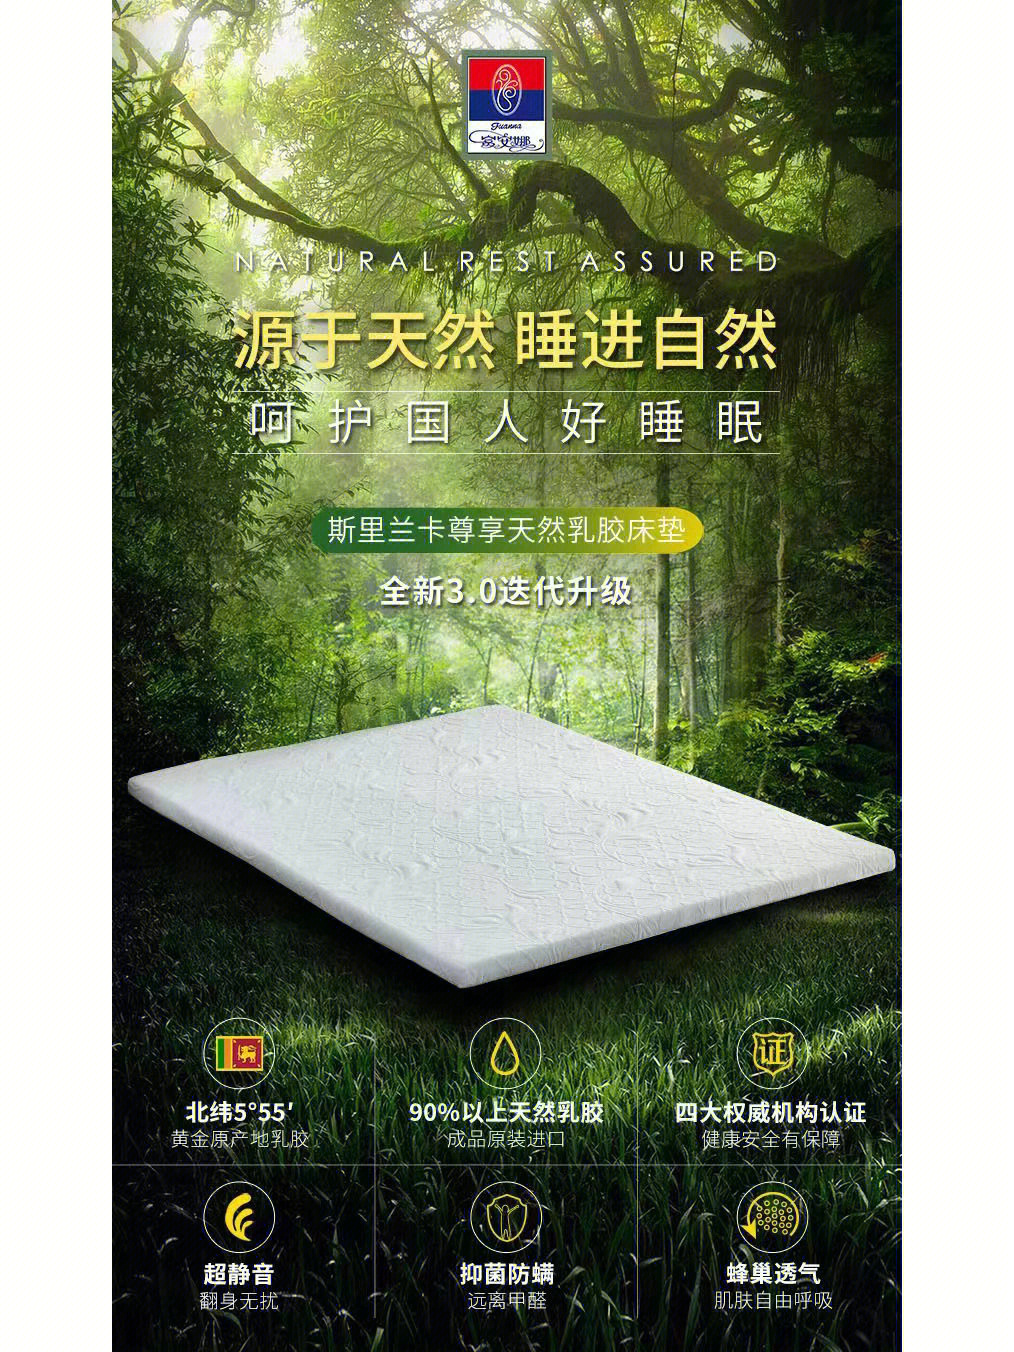 卧虎床垫广告图片